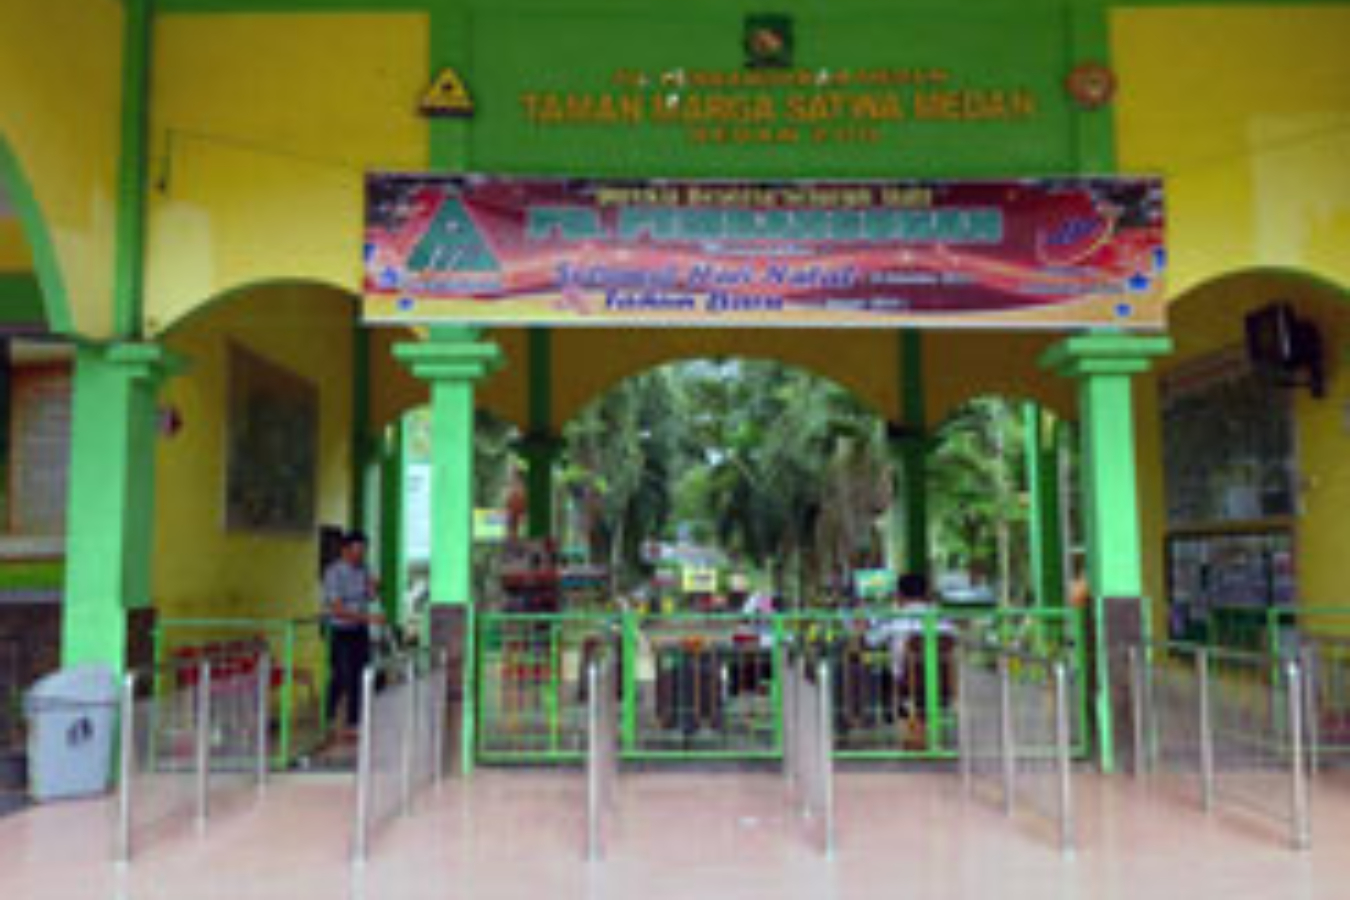 Kebun Binatang Medan